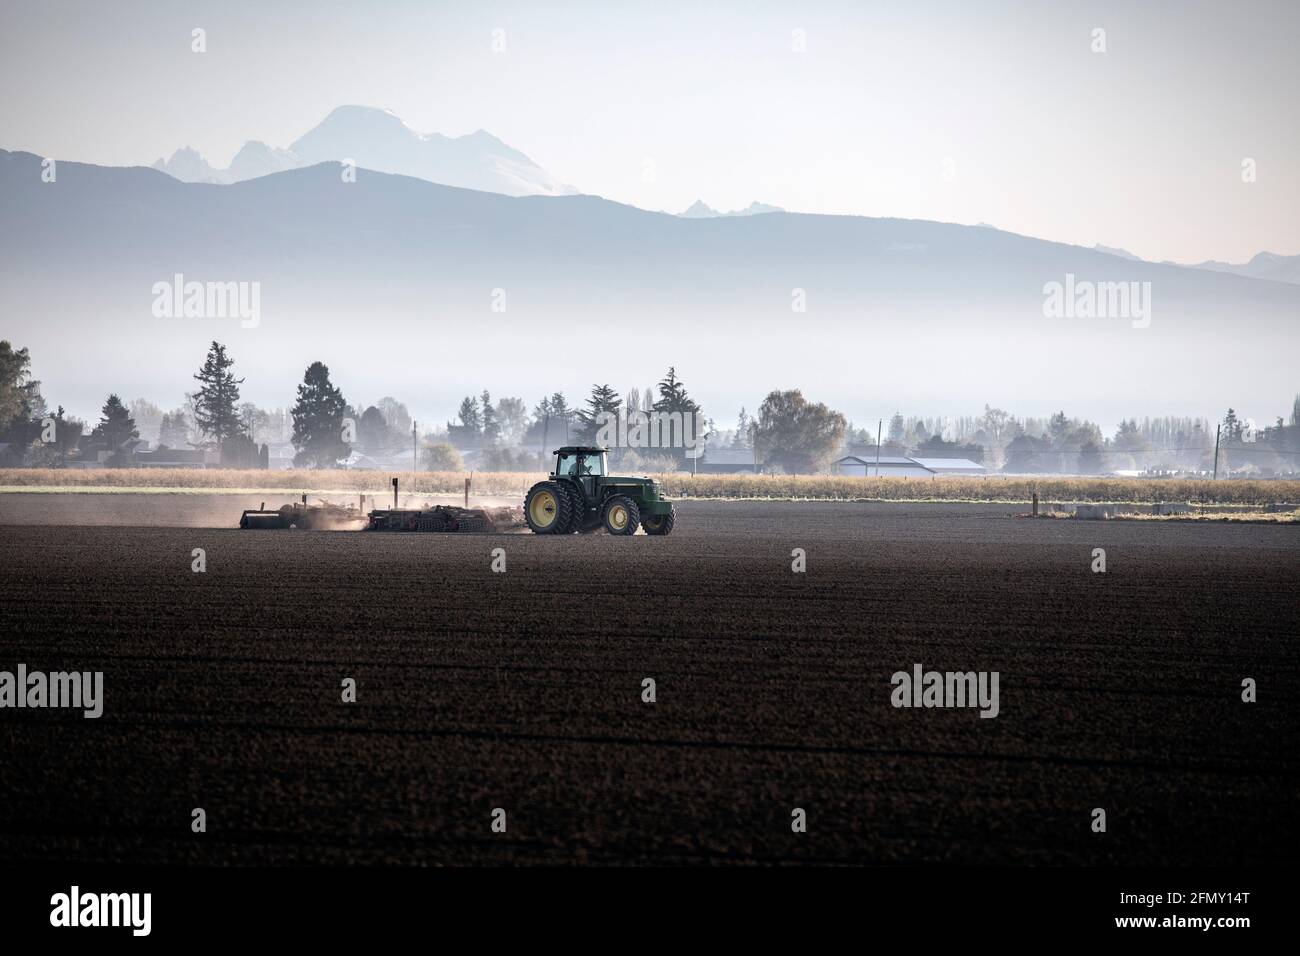 WA20192-00....WASHINGTON - trattore che aratura un campo nella valle di Skagit. Foto Stock